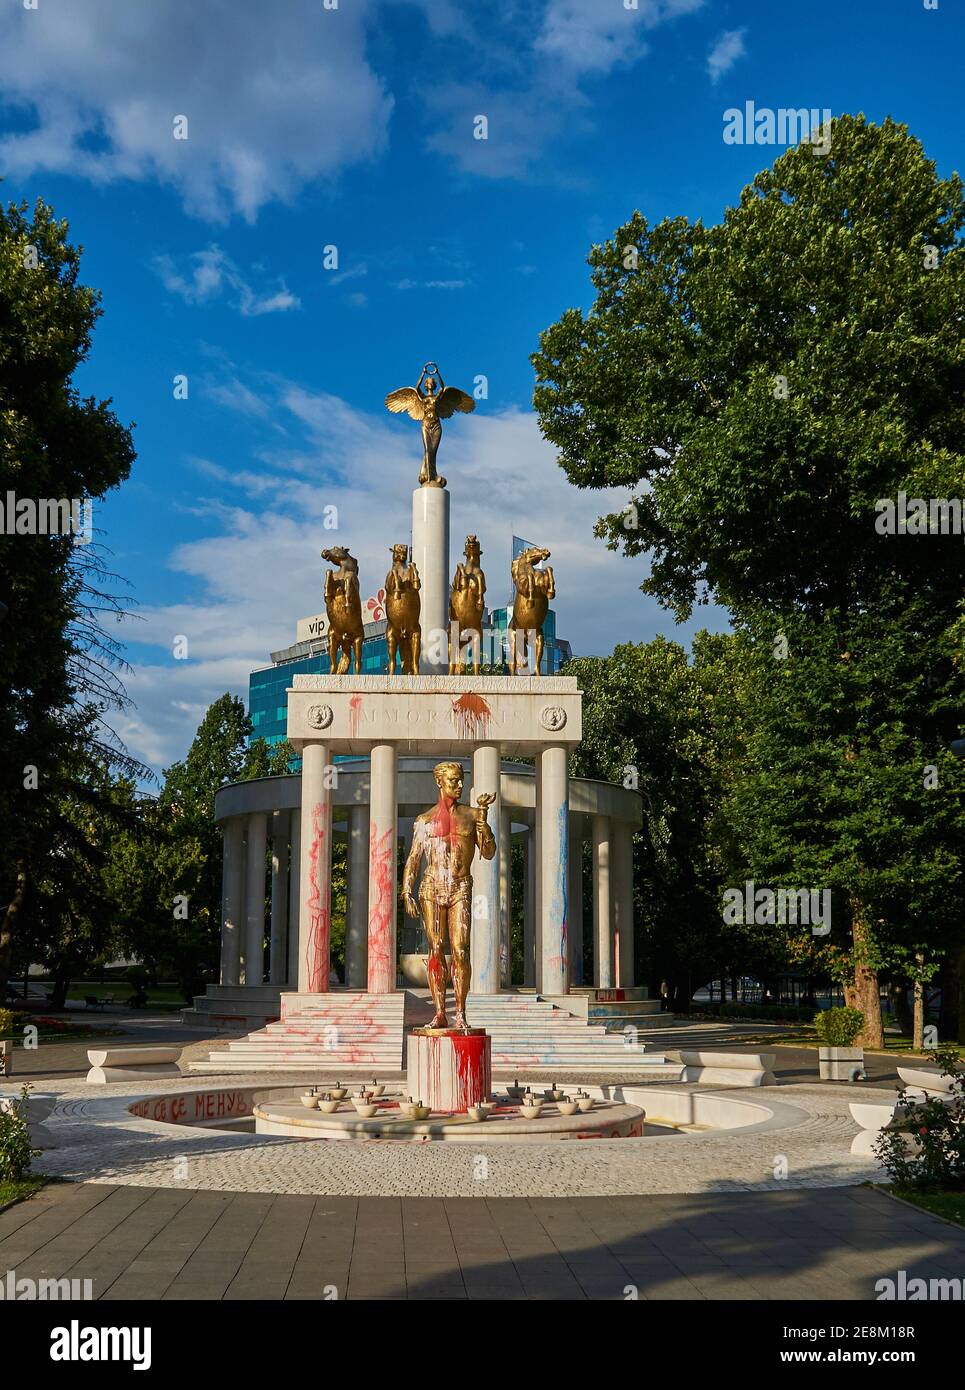 Mit Farbbomben / Schmierereien beschädigte Statue im Park Zena Borec nach Protesten. Skopje, Nordmazedonien. Stock Photo